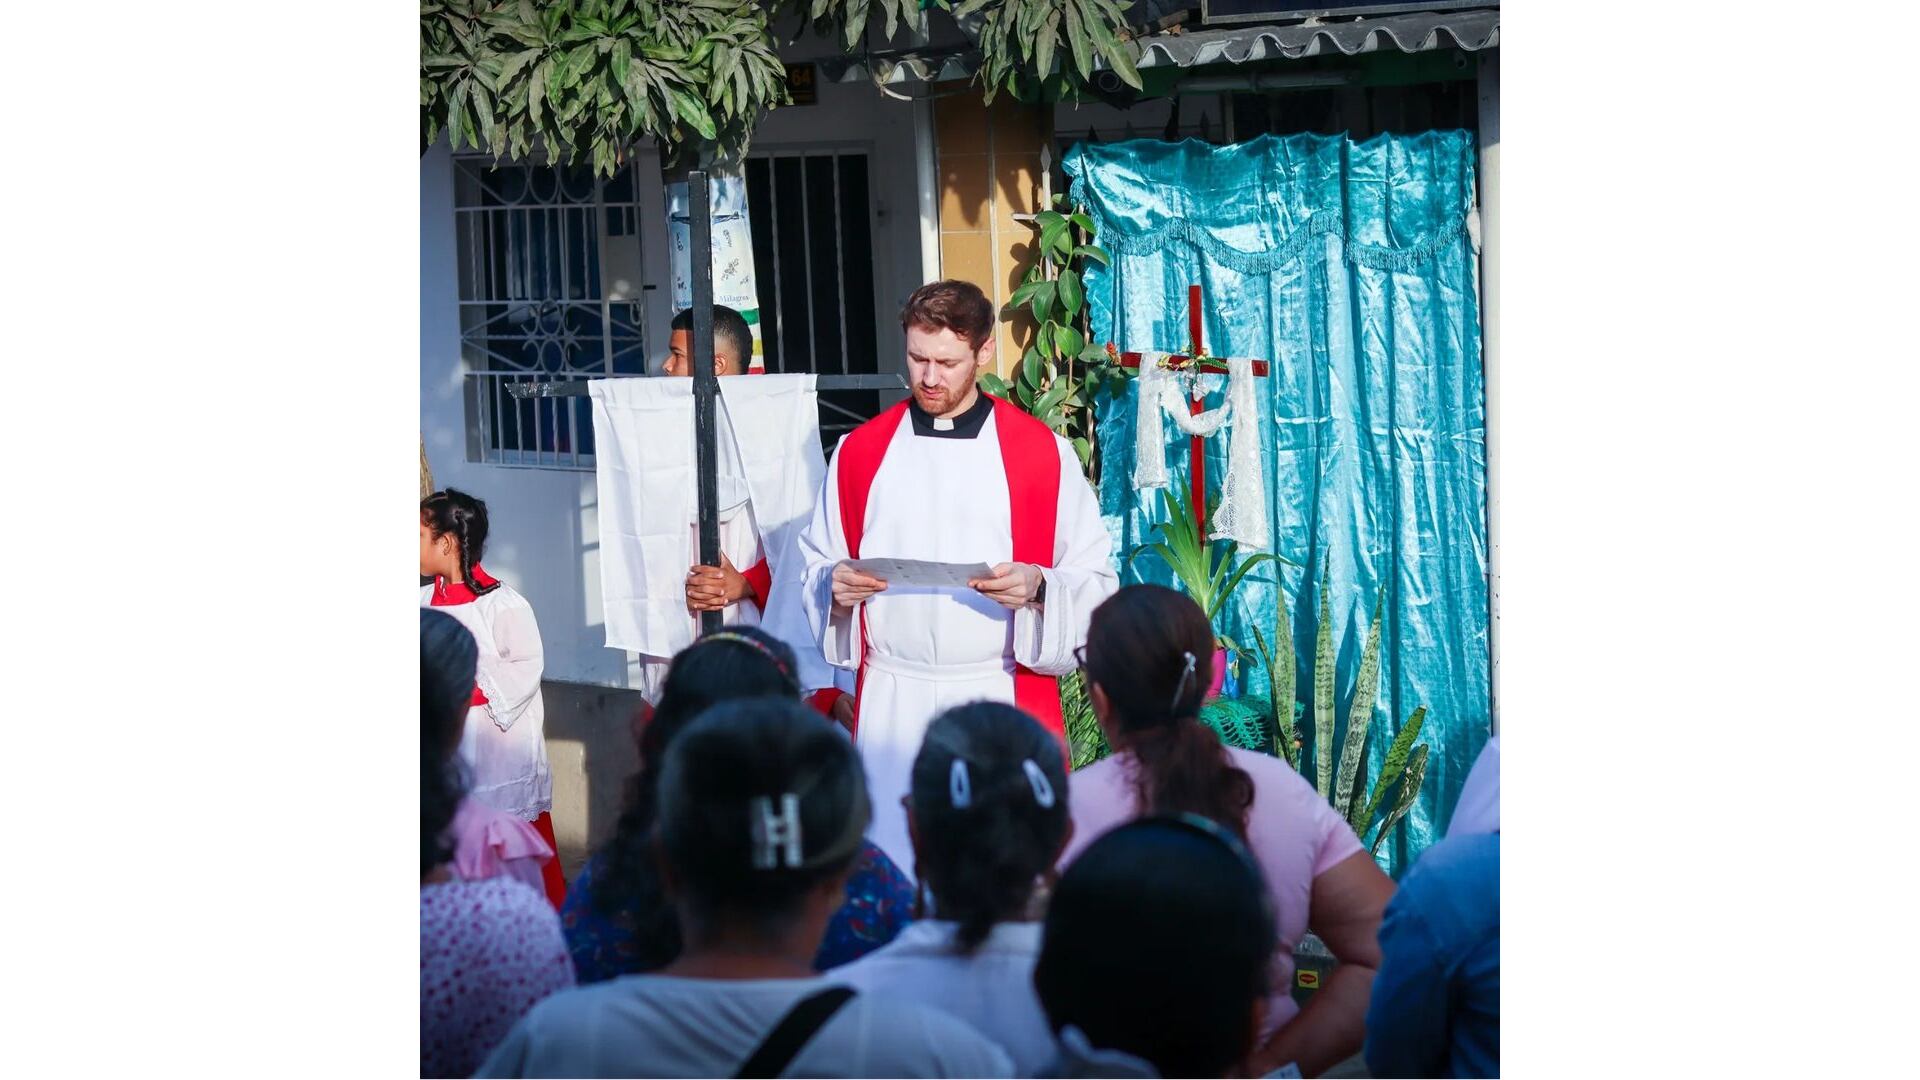 El sacerdote ha llamado la atención de los feligreses de Malambo - crédito @Parroquiadelcarmende Malambo / Instagram